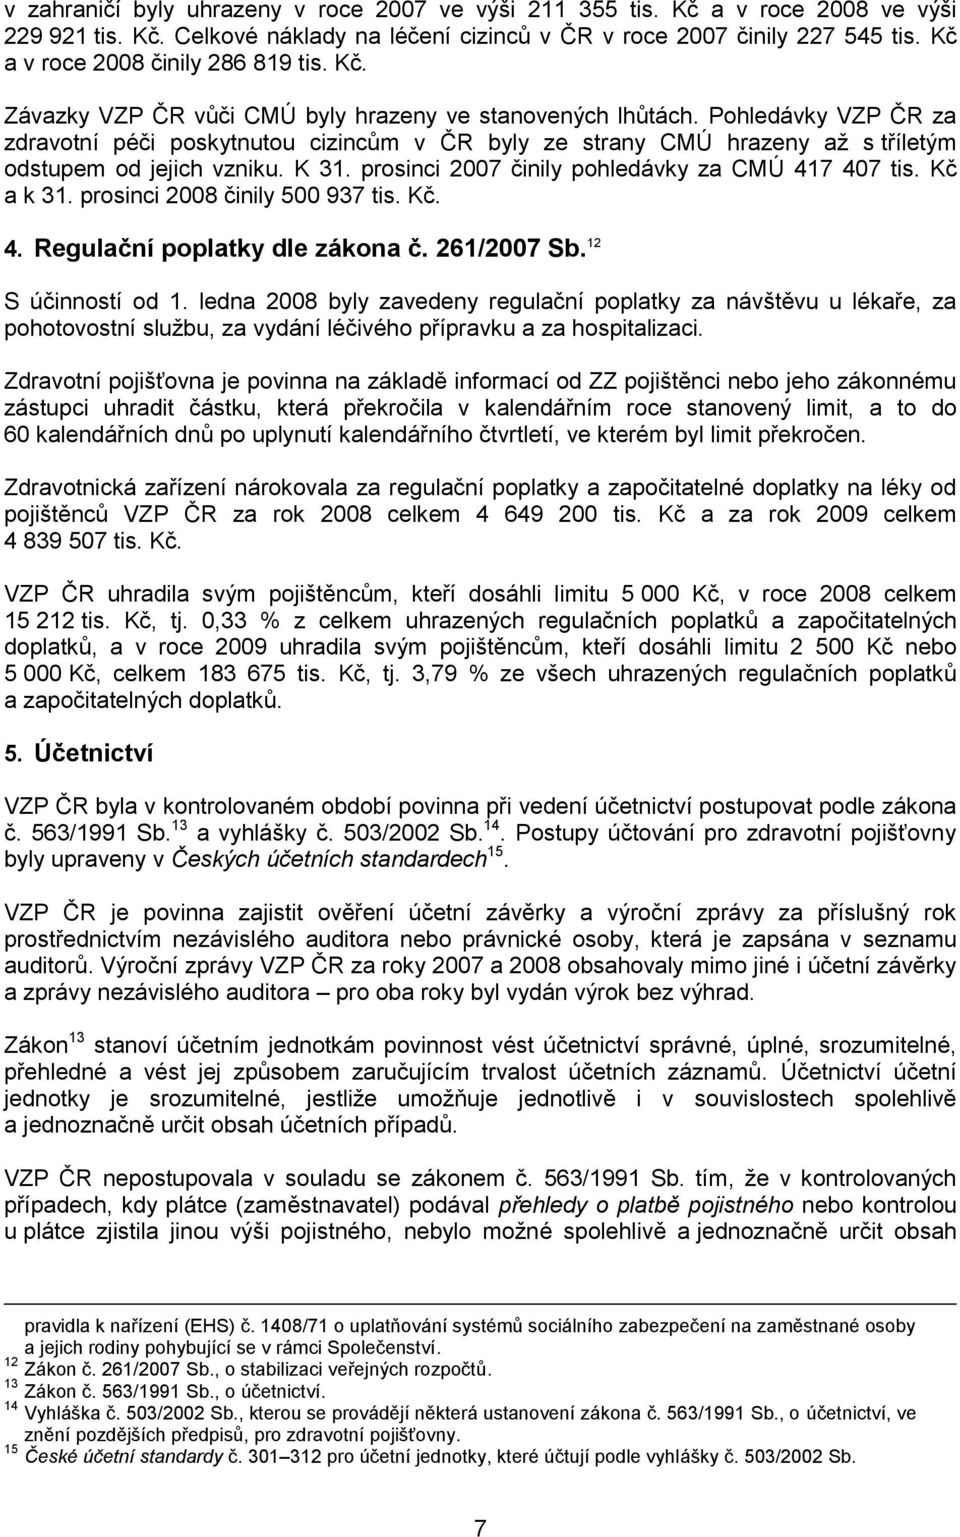 Pohledávky VZP ČR za zdravotní péči poskytnutou cizincům v ČR byly ze strany CMÚ hrazeny až s tříletým odstupem od jejich vzniku. K 31. prosinci 2007 činily pohledávky za CMÚ 417 407 tis. Kč a k 31.